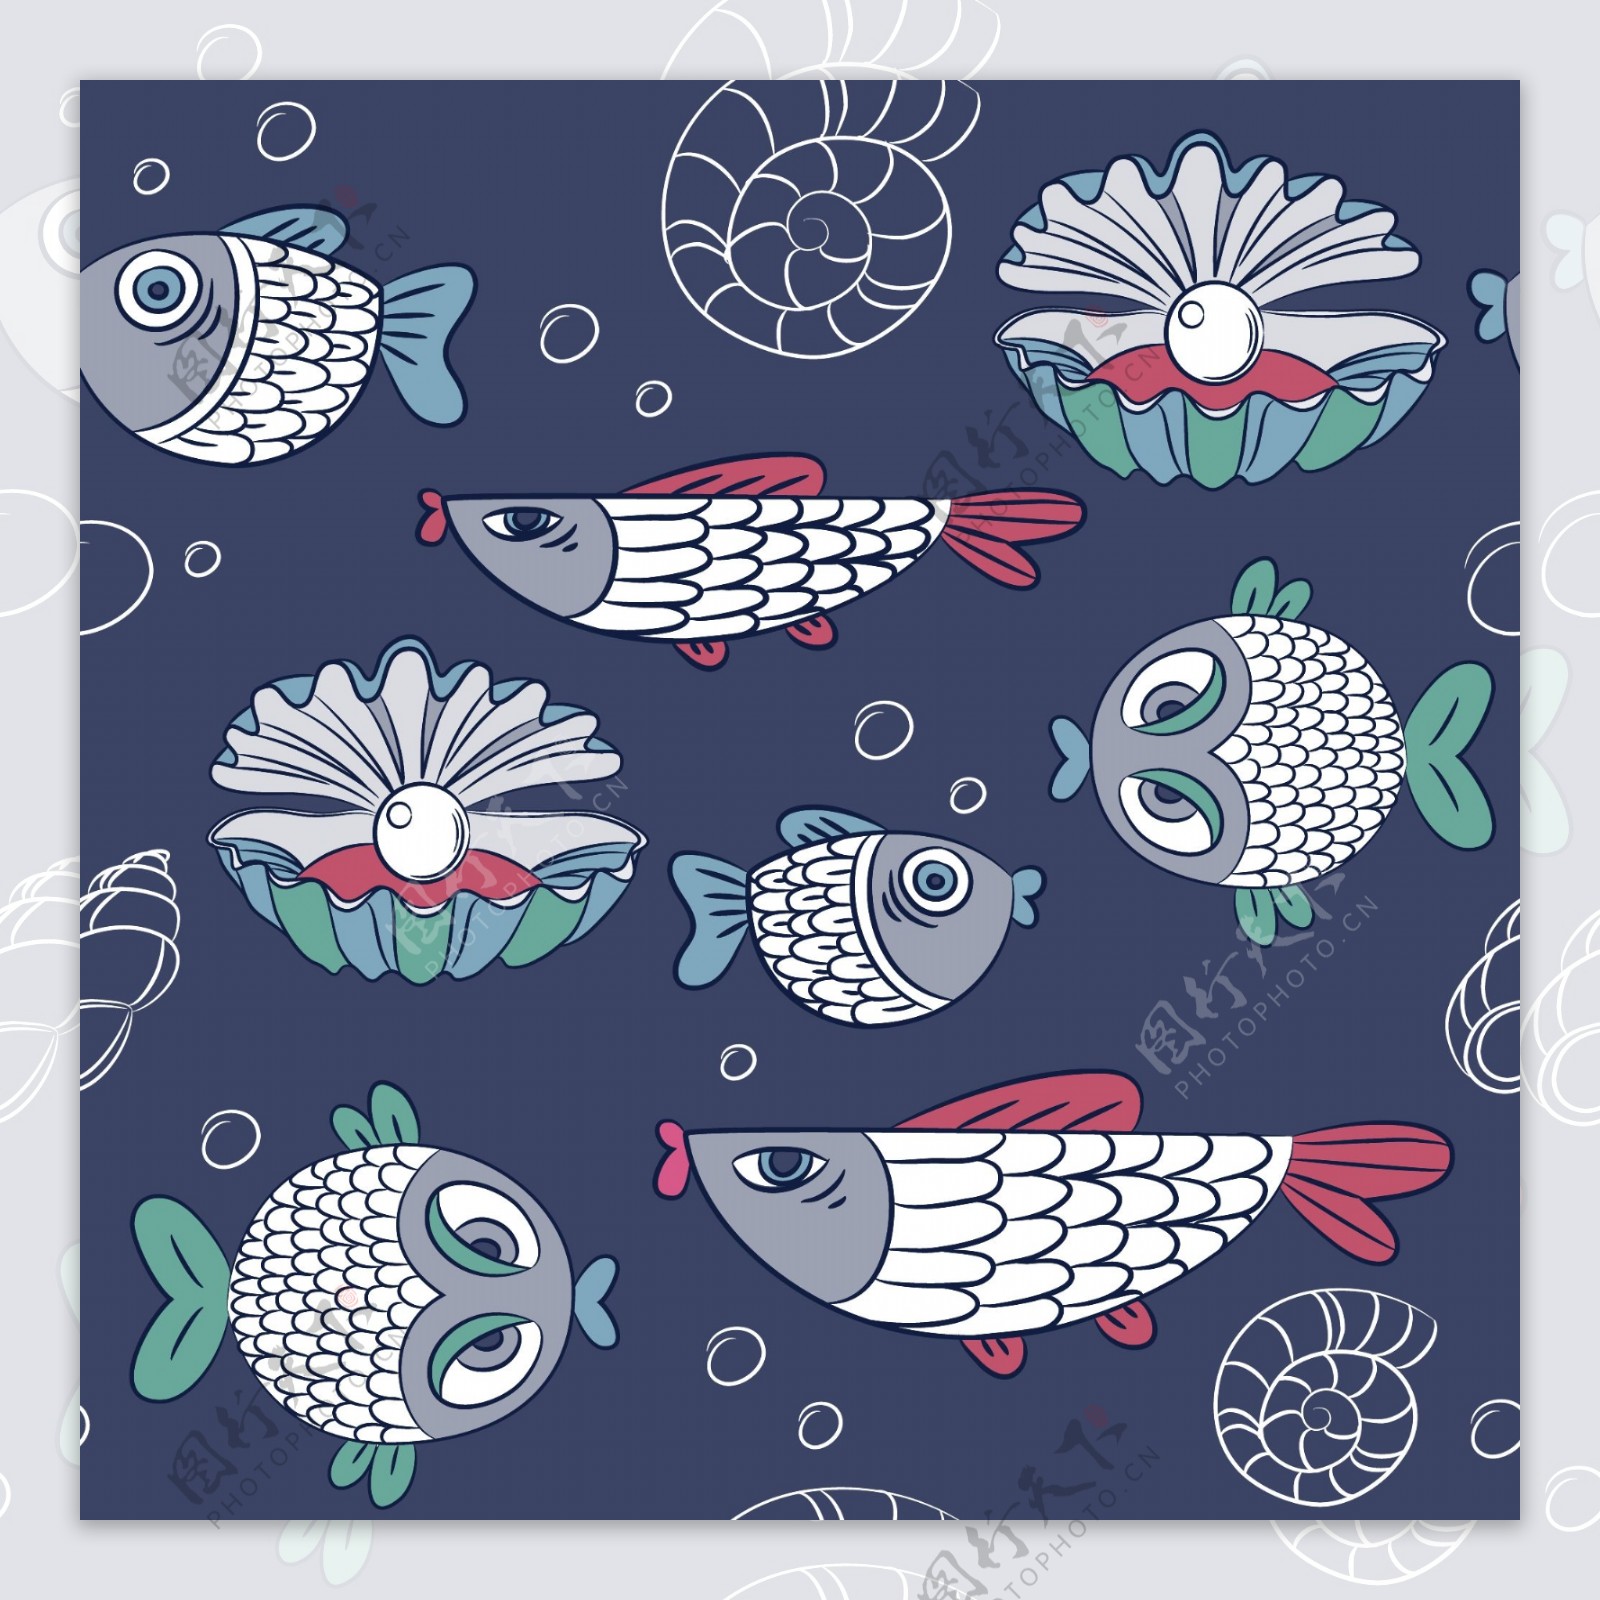 鱼的图案设计